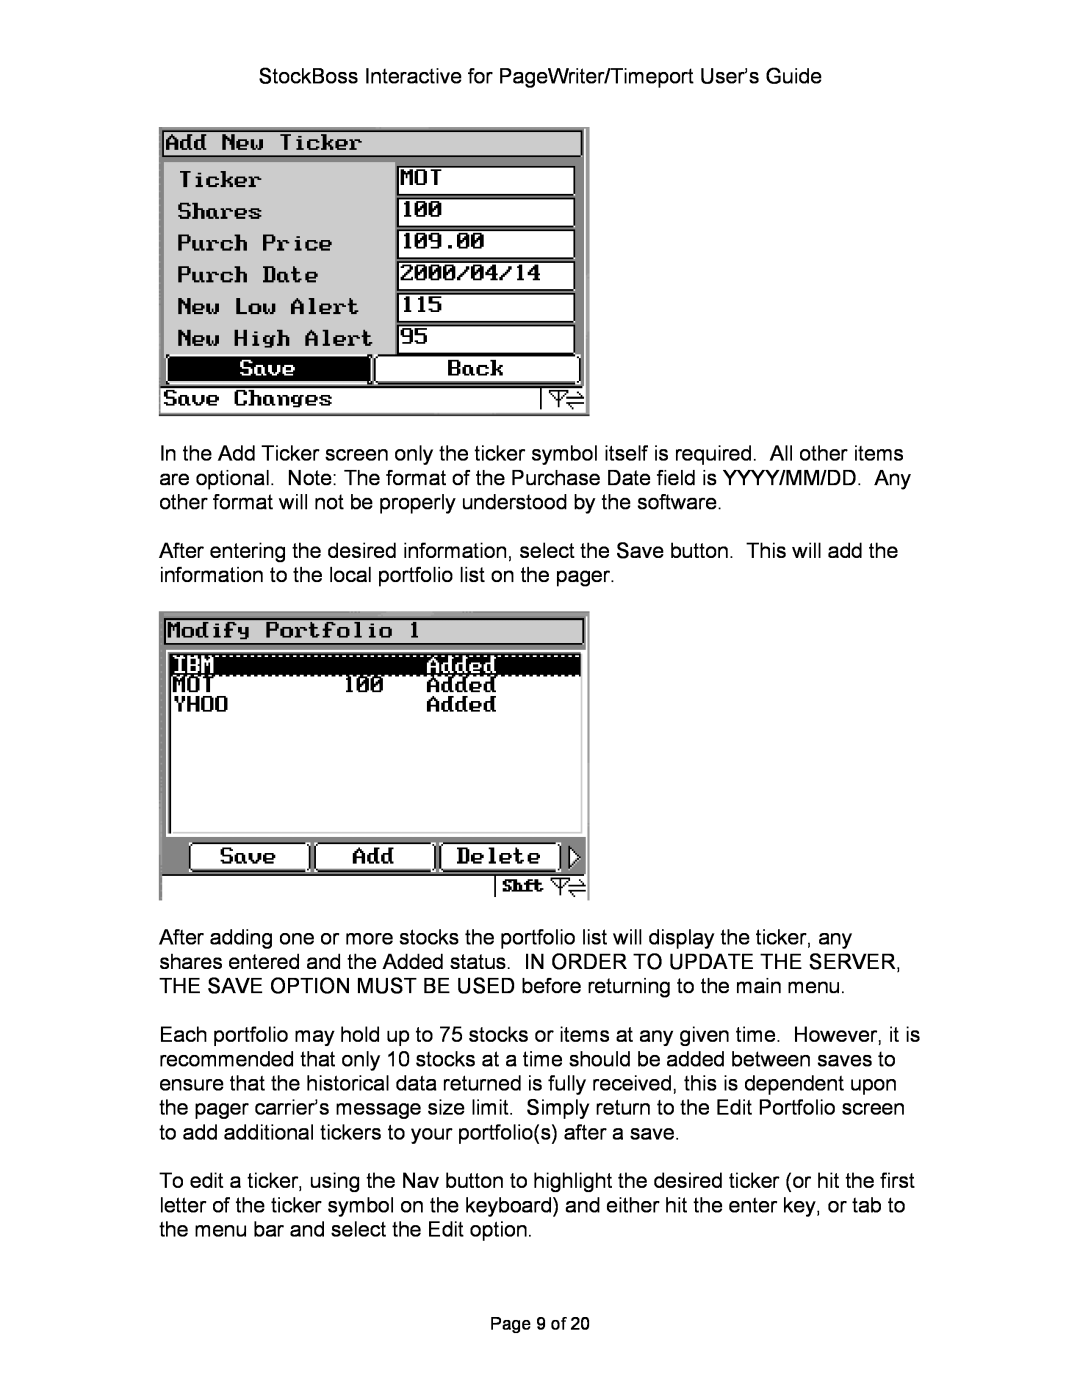 Motorola P930 Series manual Page 9 of 